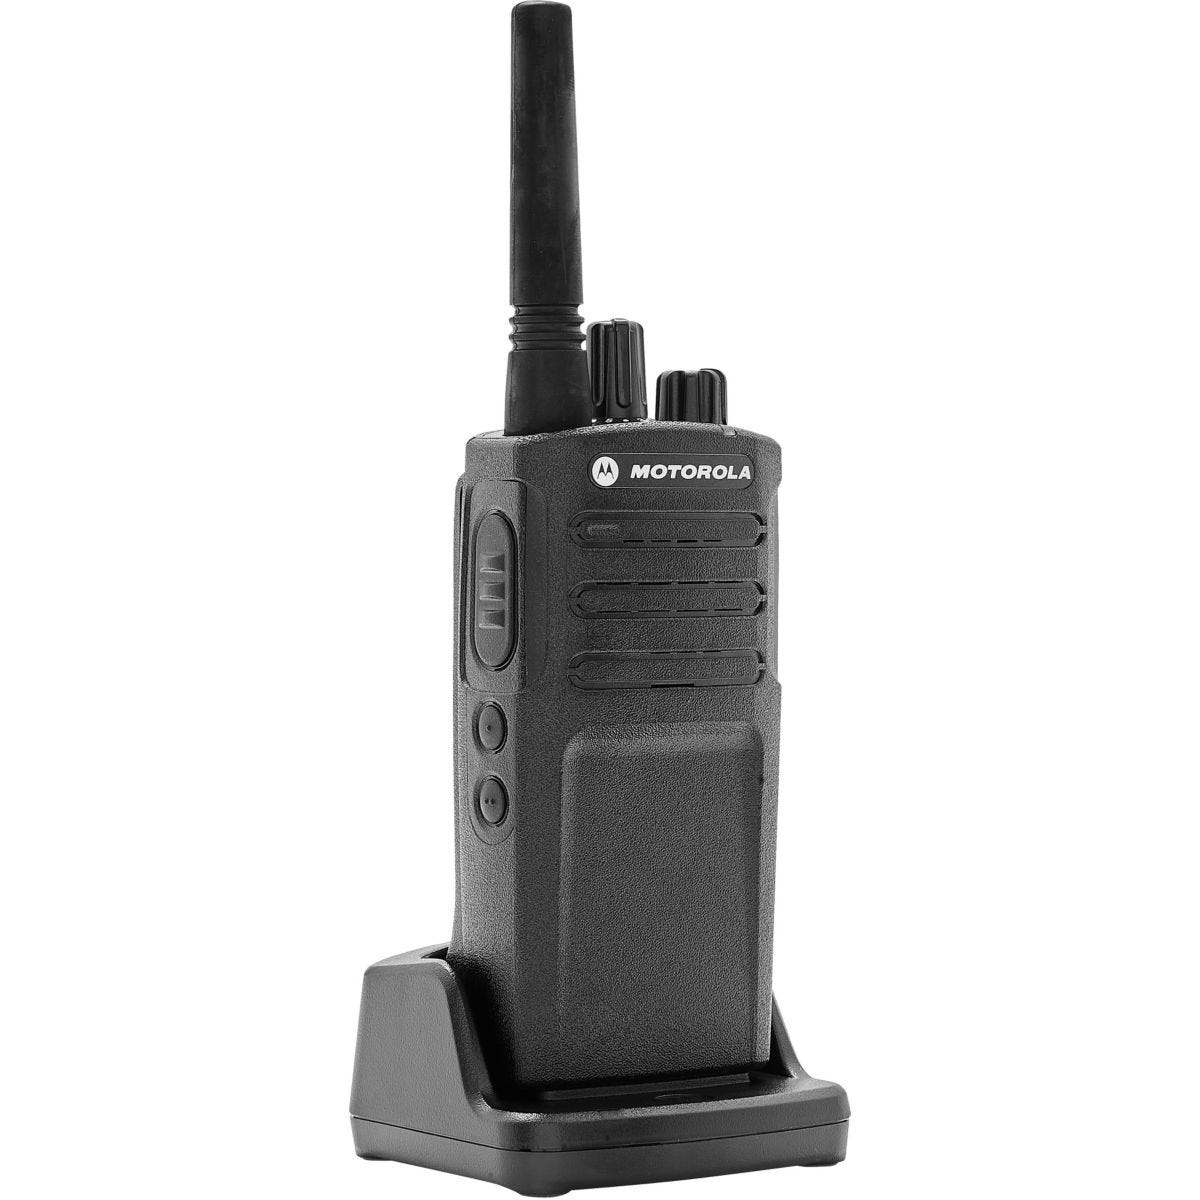 Talkie walkie : comment choisir